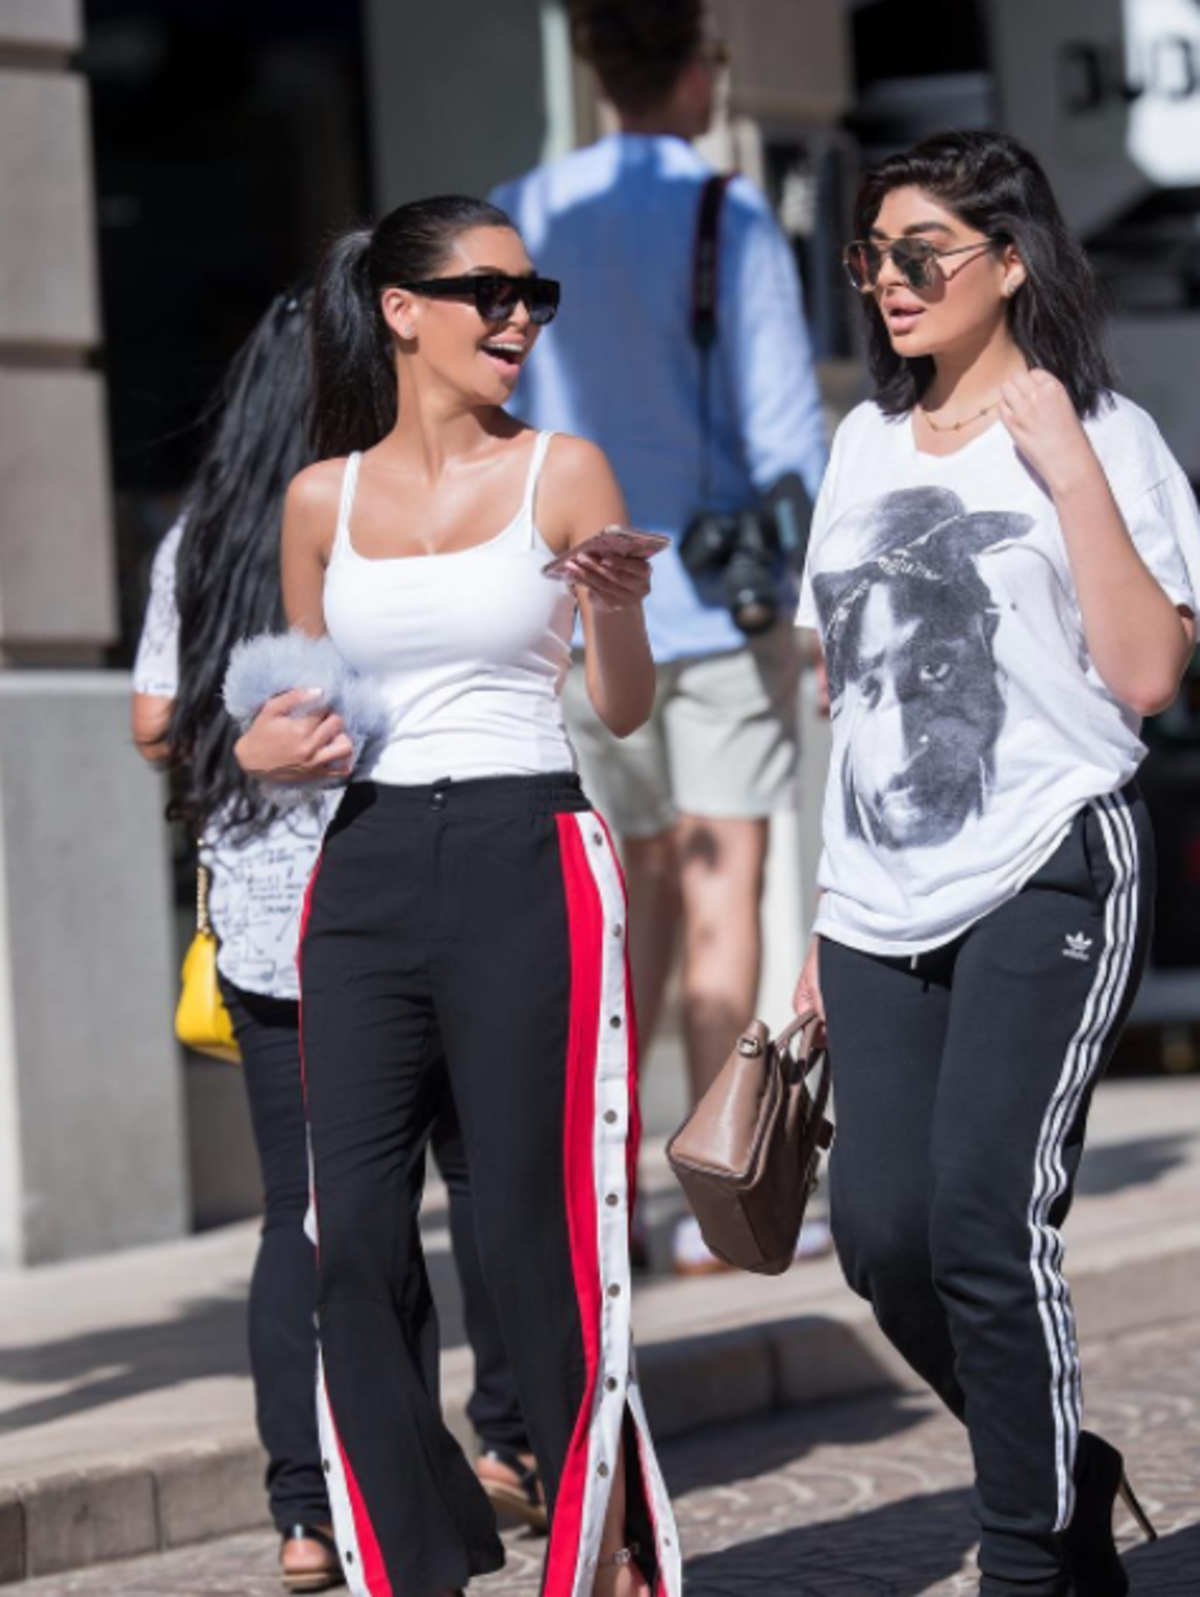 Sonia i Fyza Ali - siostry, które wyglądają jak Kim Kardashian i Kylie Jenner